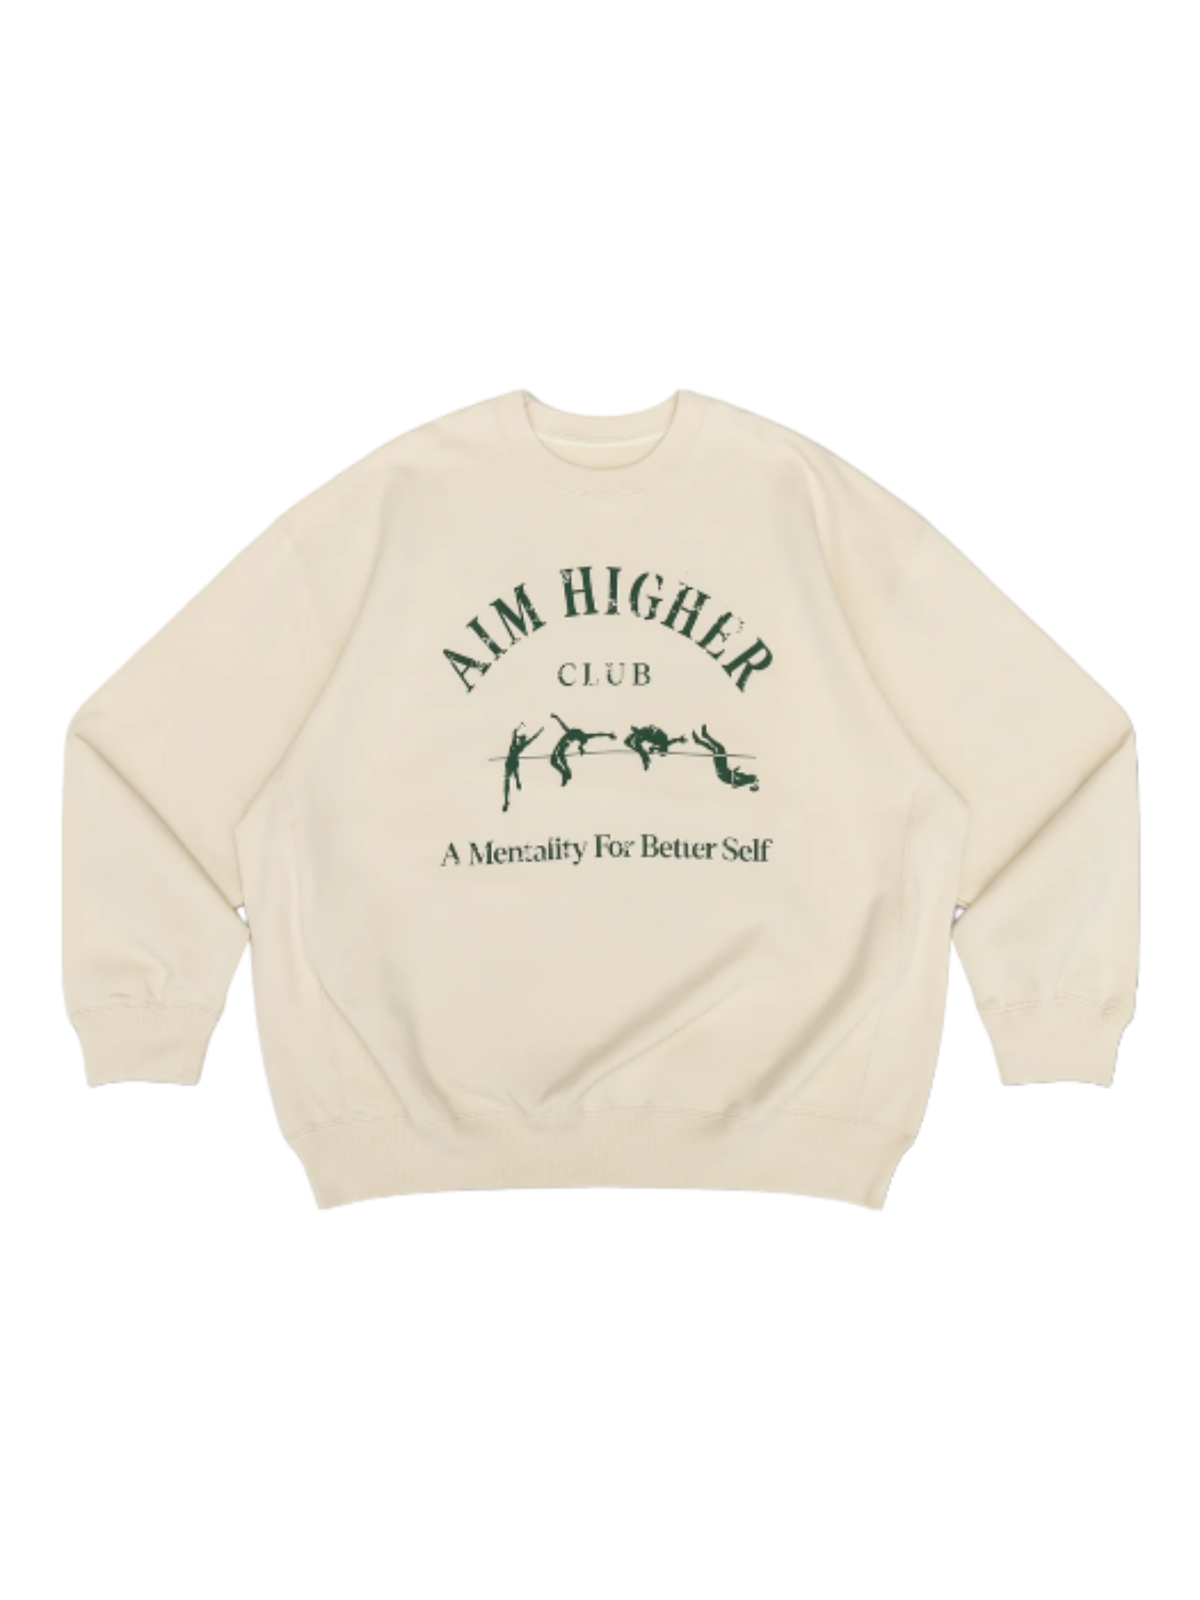 Aim Higher Club Light Sweater In Cream